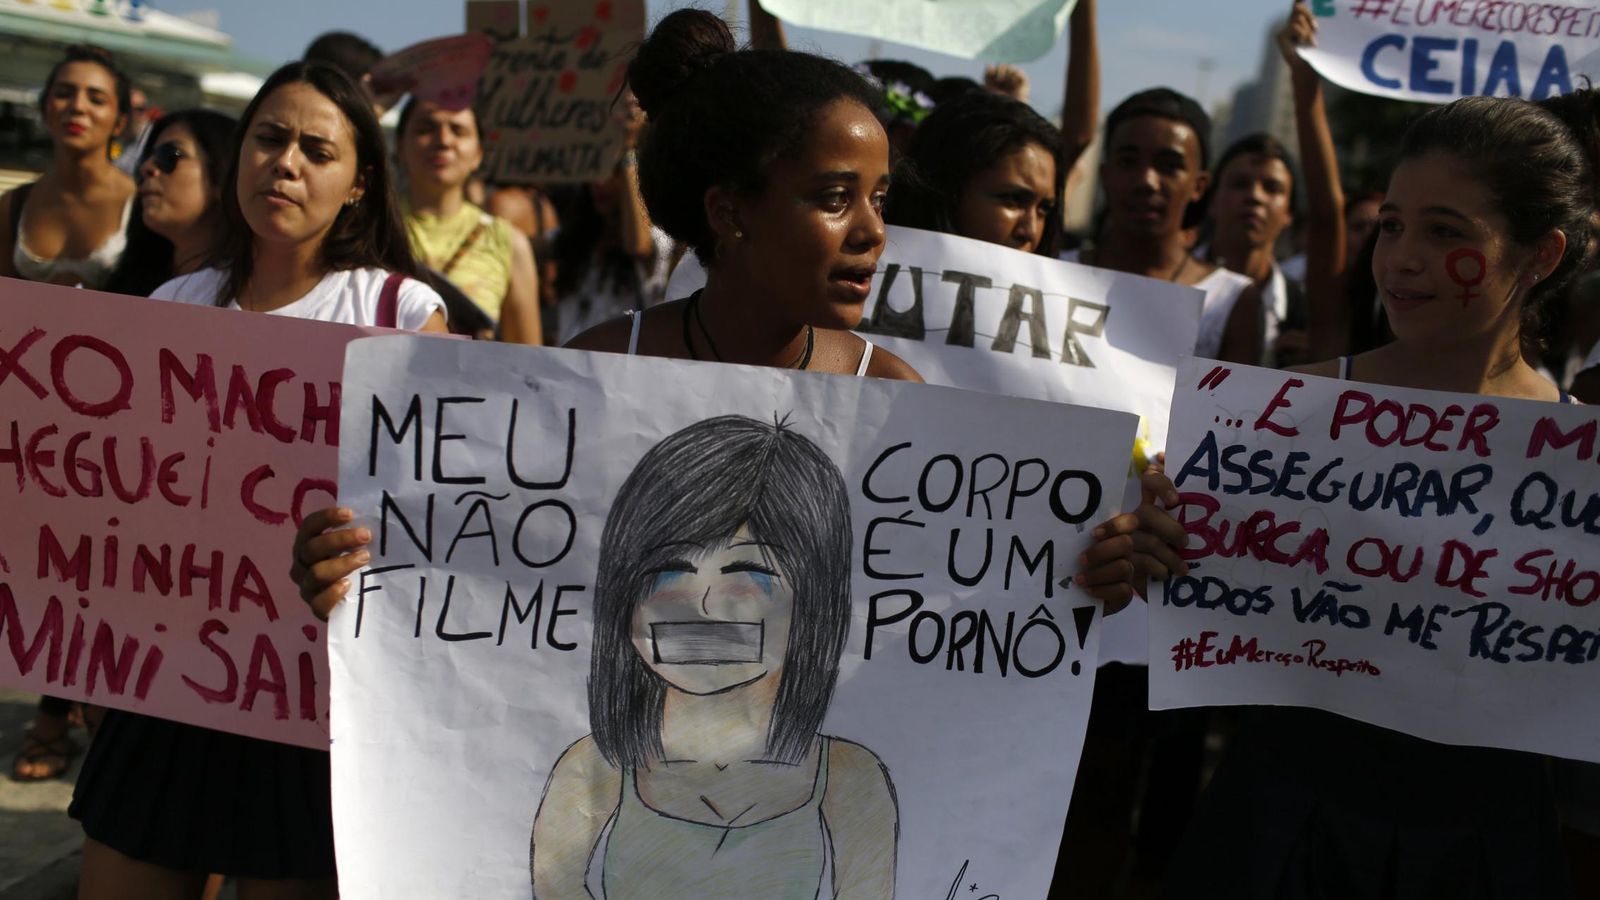 Foto: Estudiantes se manifiestan en contra de las violaciones durante el Día Internacional de la Mujer, el 8 de marzo de 2015. (Reuters)